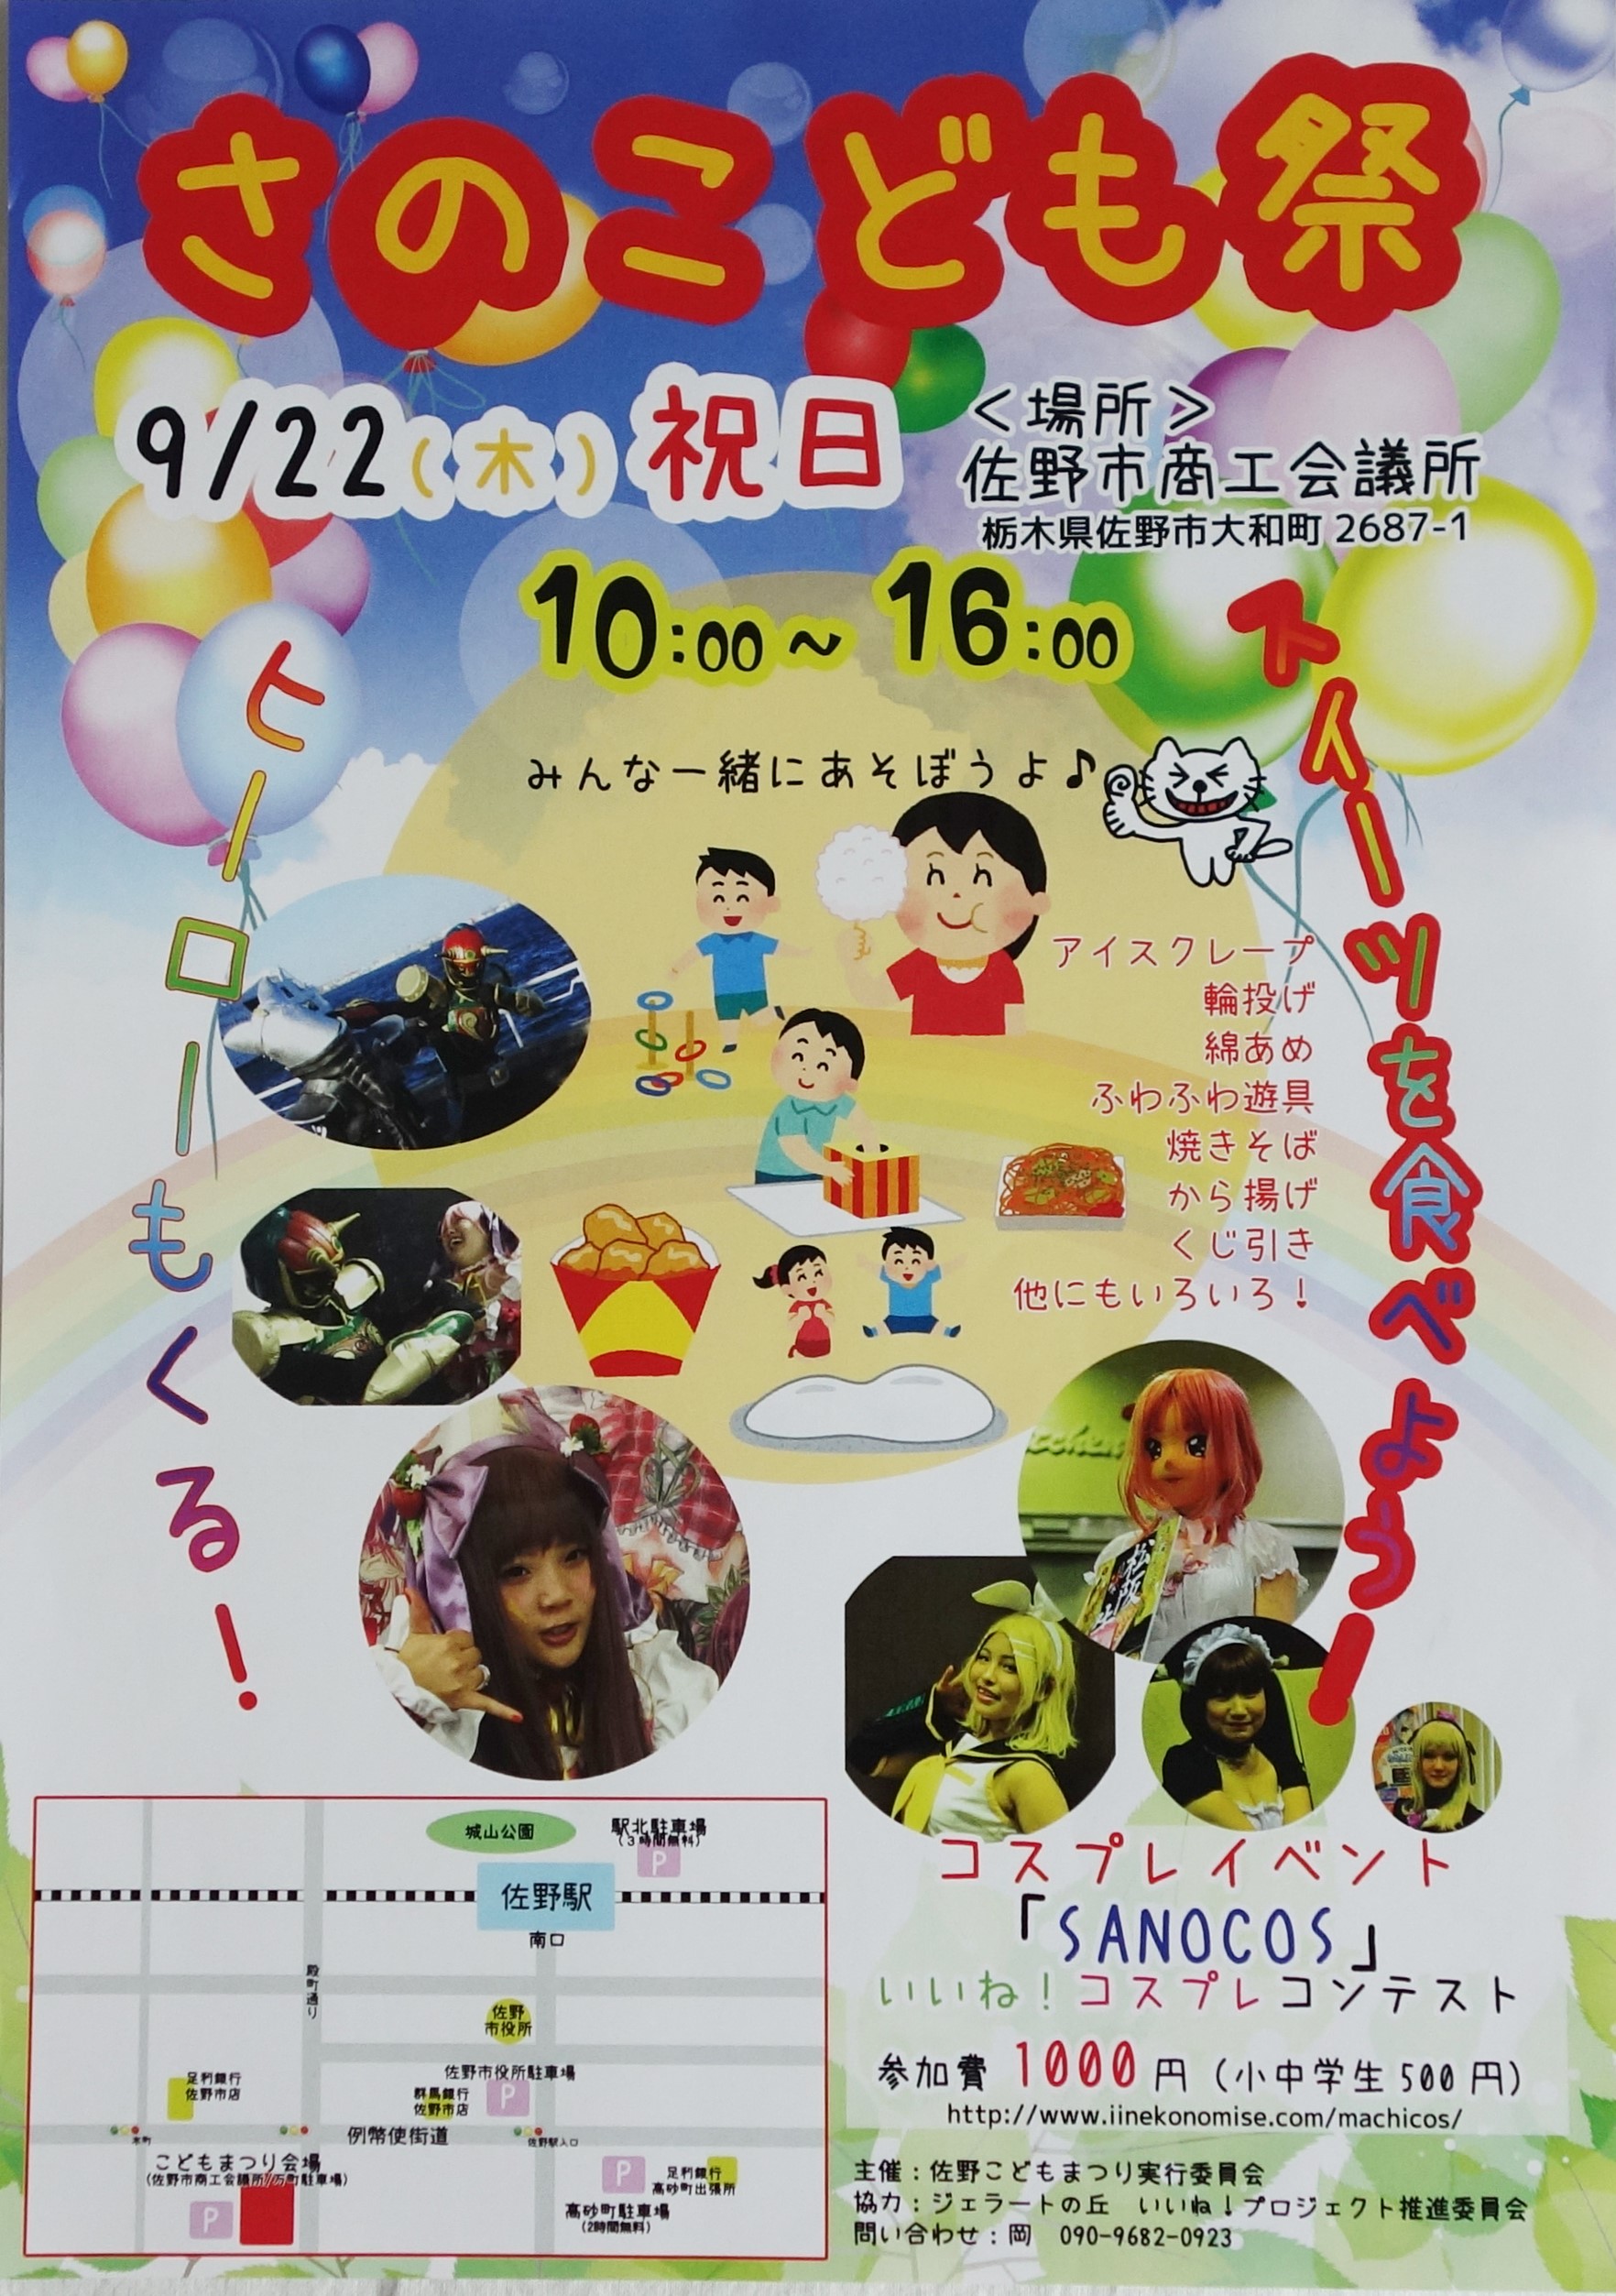 【佐野市】「さのこども祭」が9/22に開催されますよ